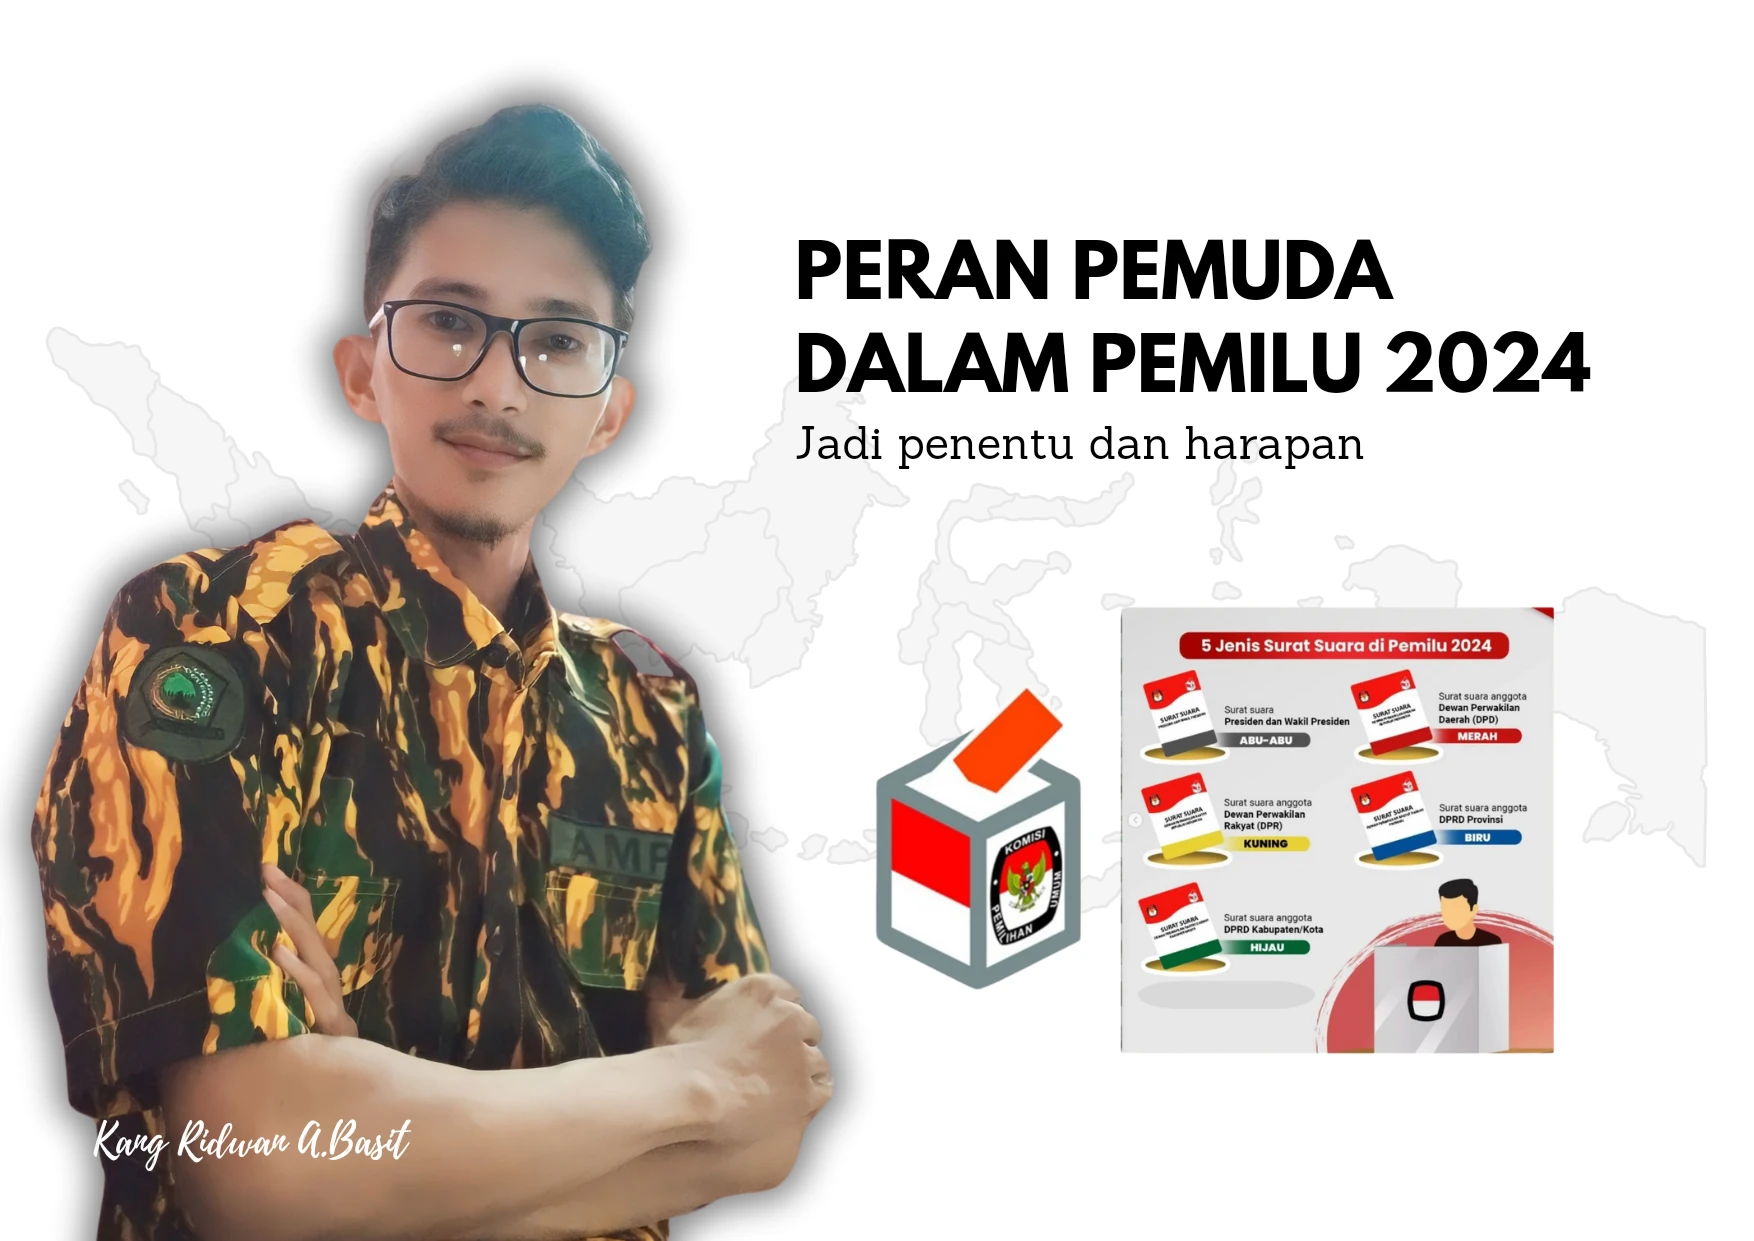 Pentingnya Peran Pemuda dalam Pemilu 2024 di Indonesia